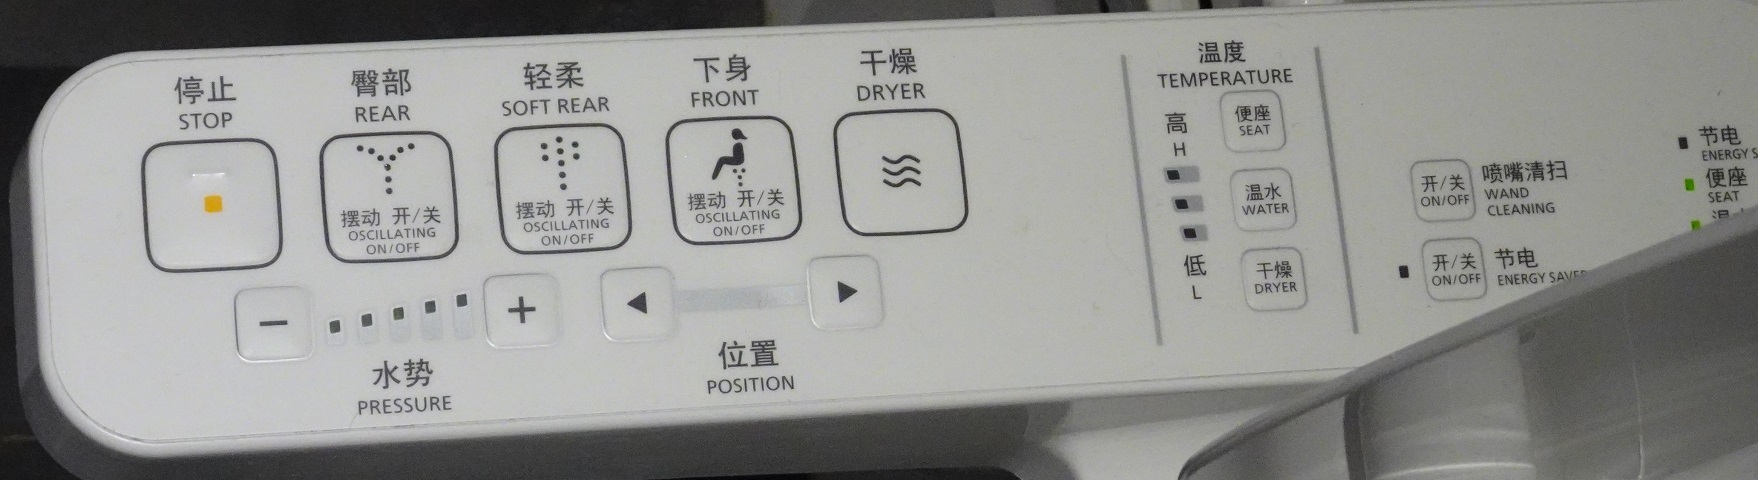 中国で発見したシャワートイレ